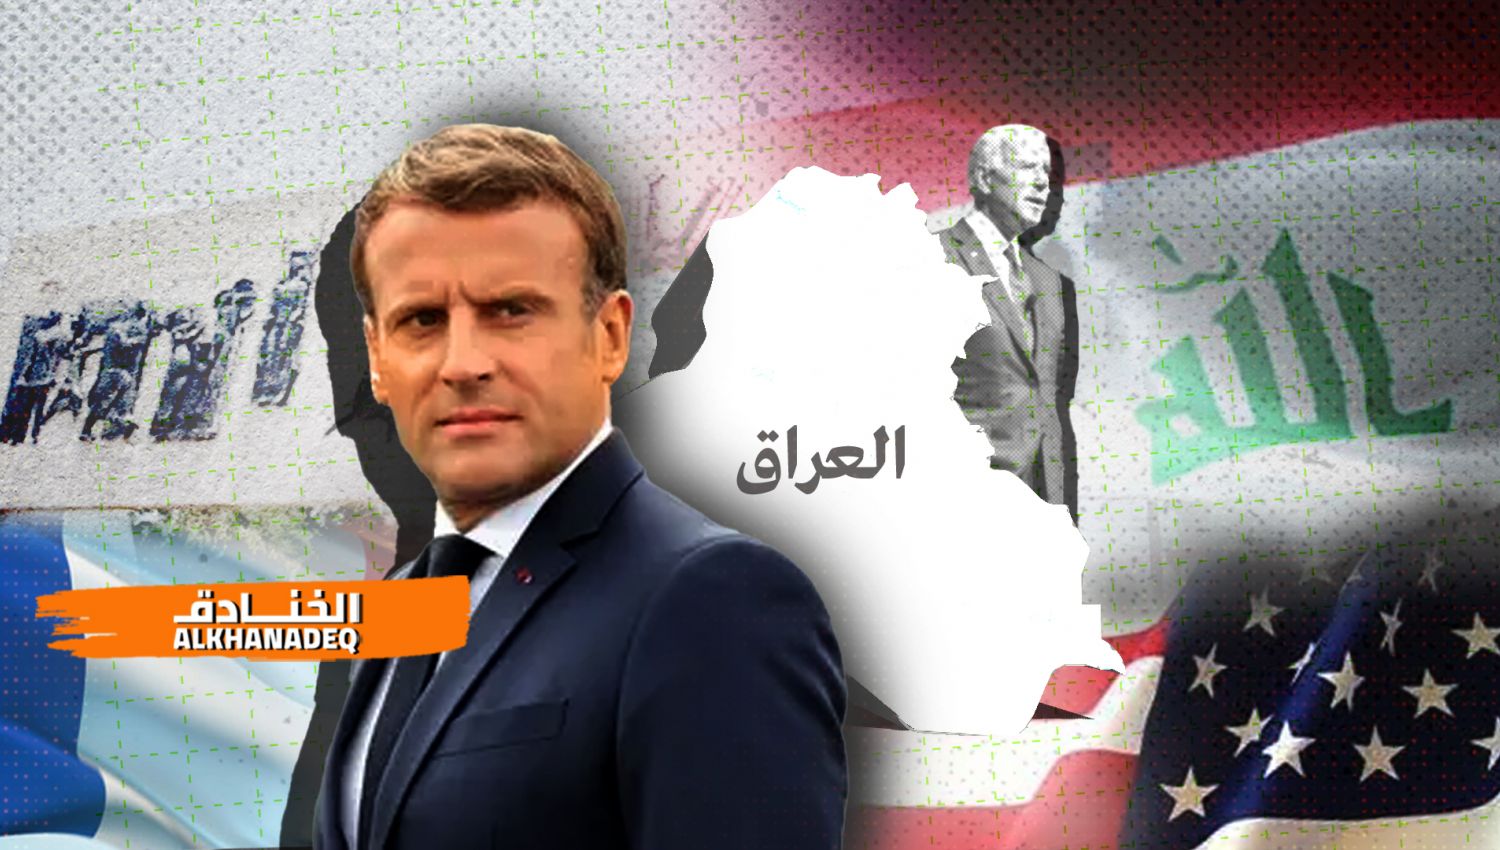 فرنسا وكيل عن أمريكا في العراق؟